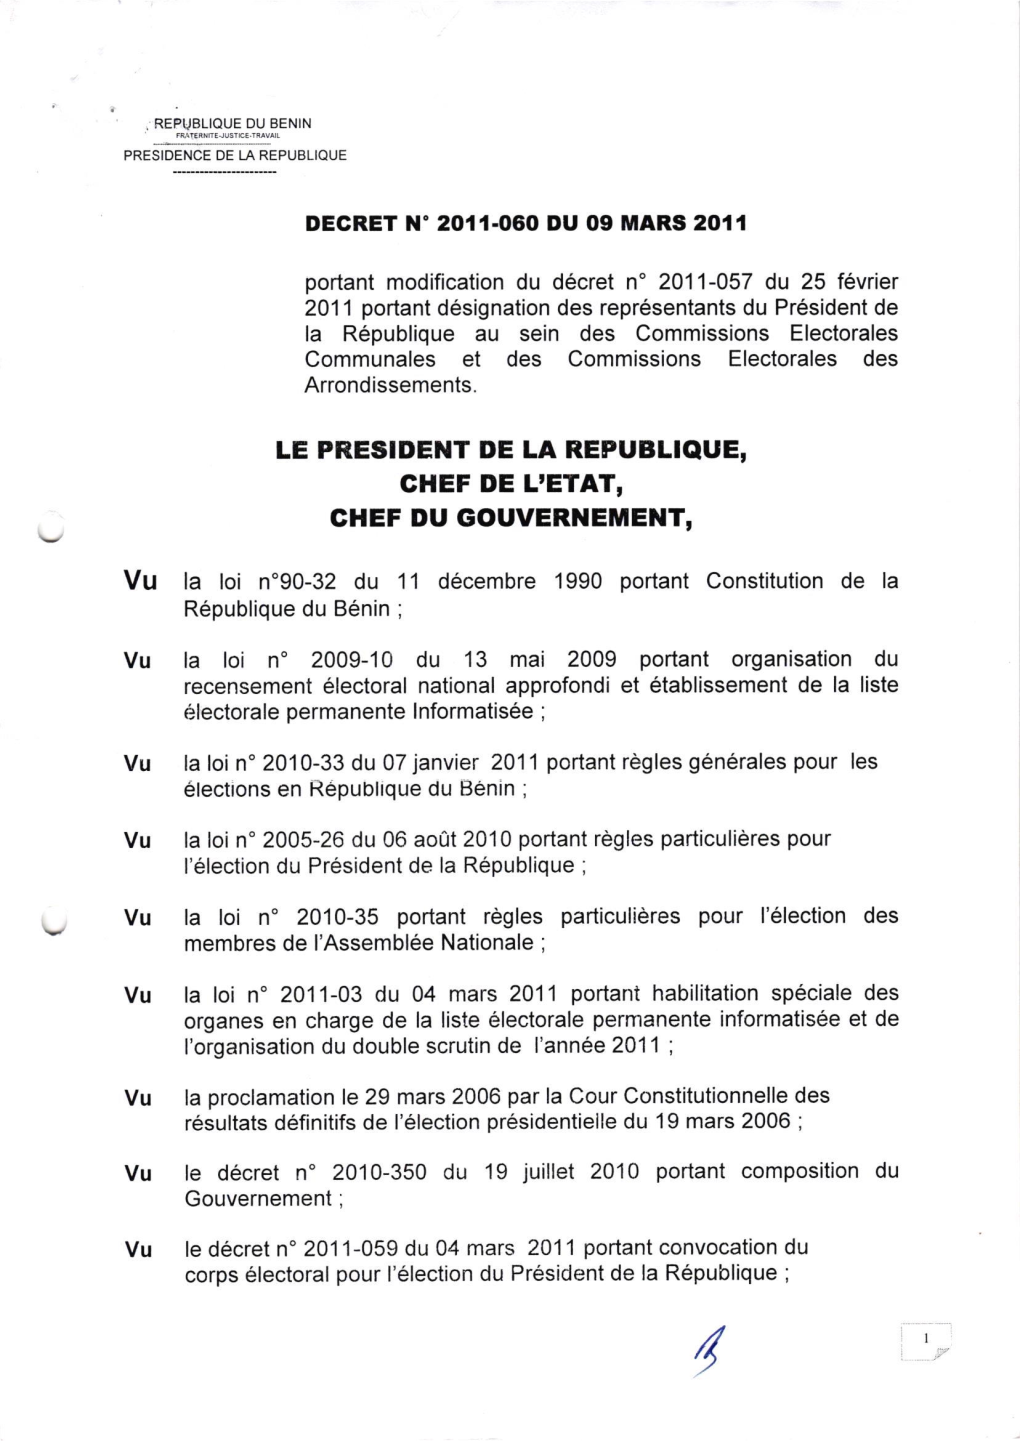 Le President De La Republique, Ghef Du